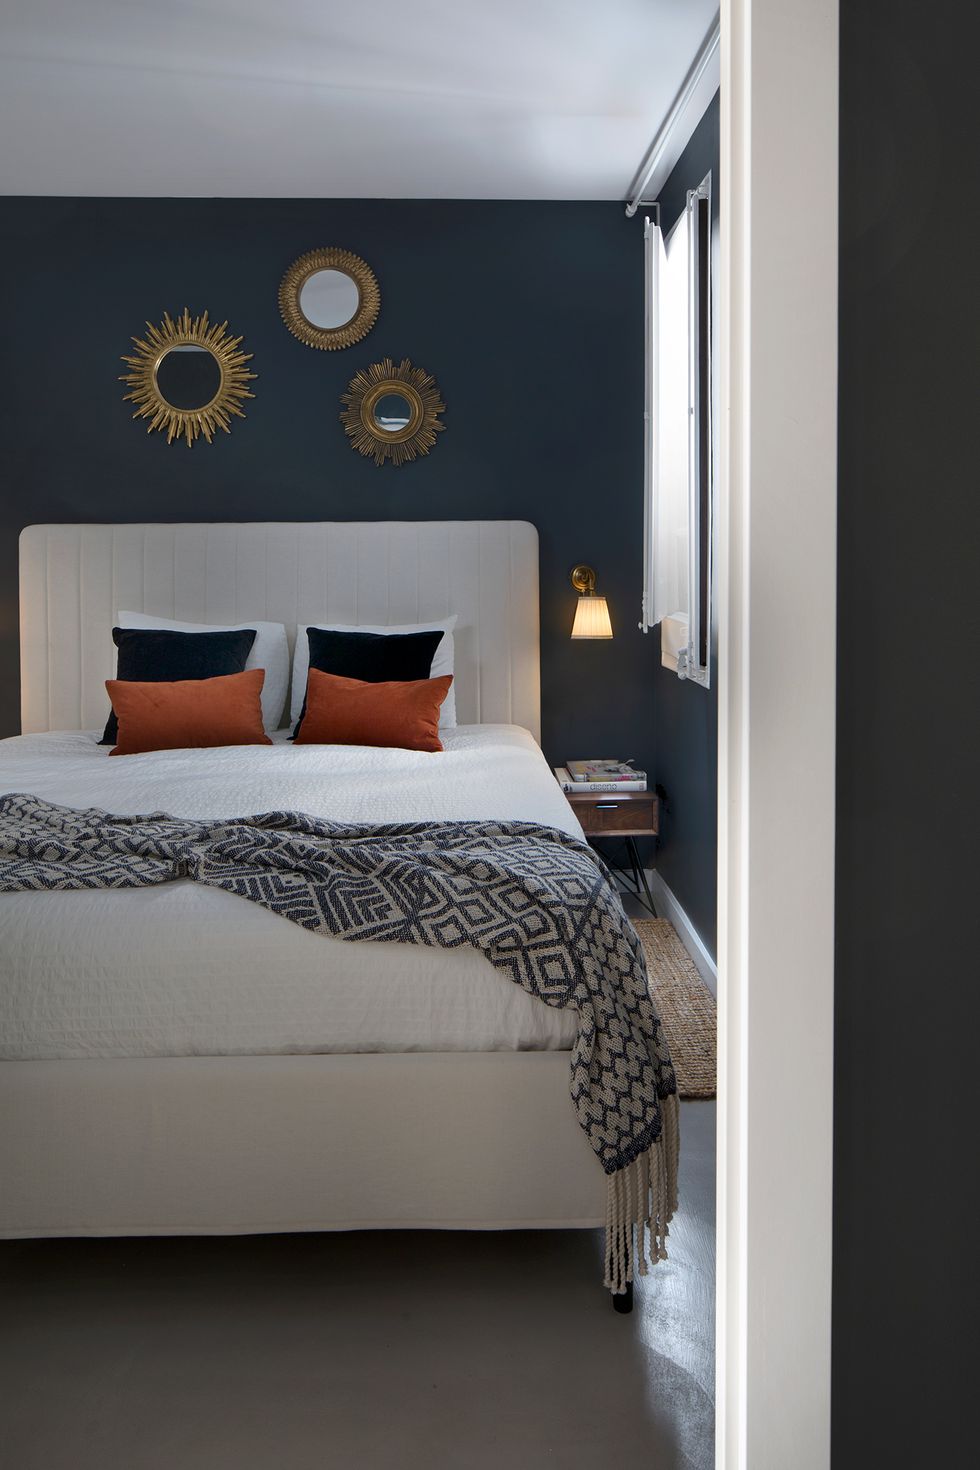 Dormitorio con cama a medida en color blanco y tres espejos tipo sol sobre el cabecero